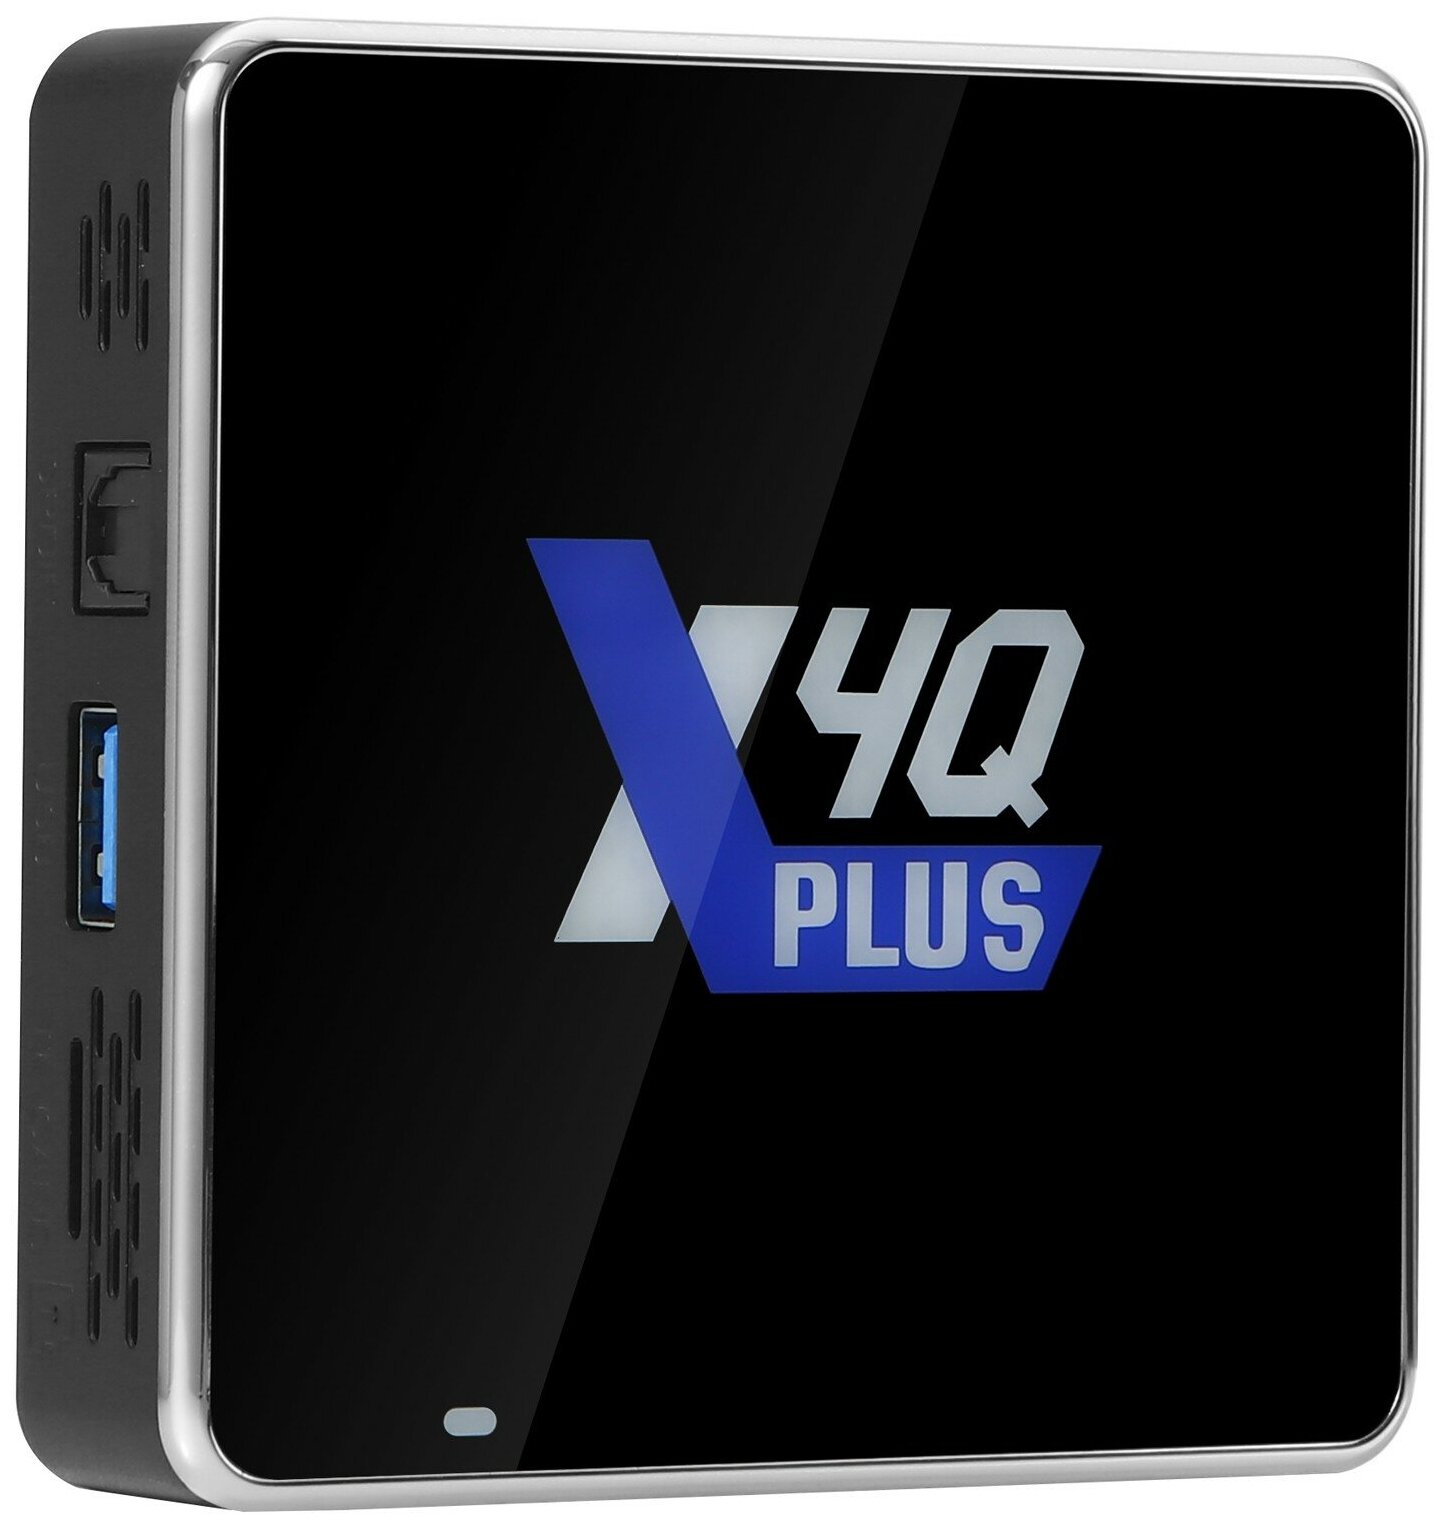 IPTV приставка Ugoos X4Q Plus 4/64Gb